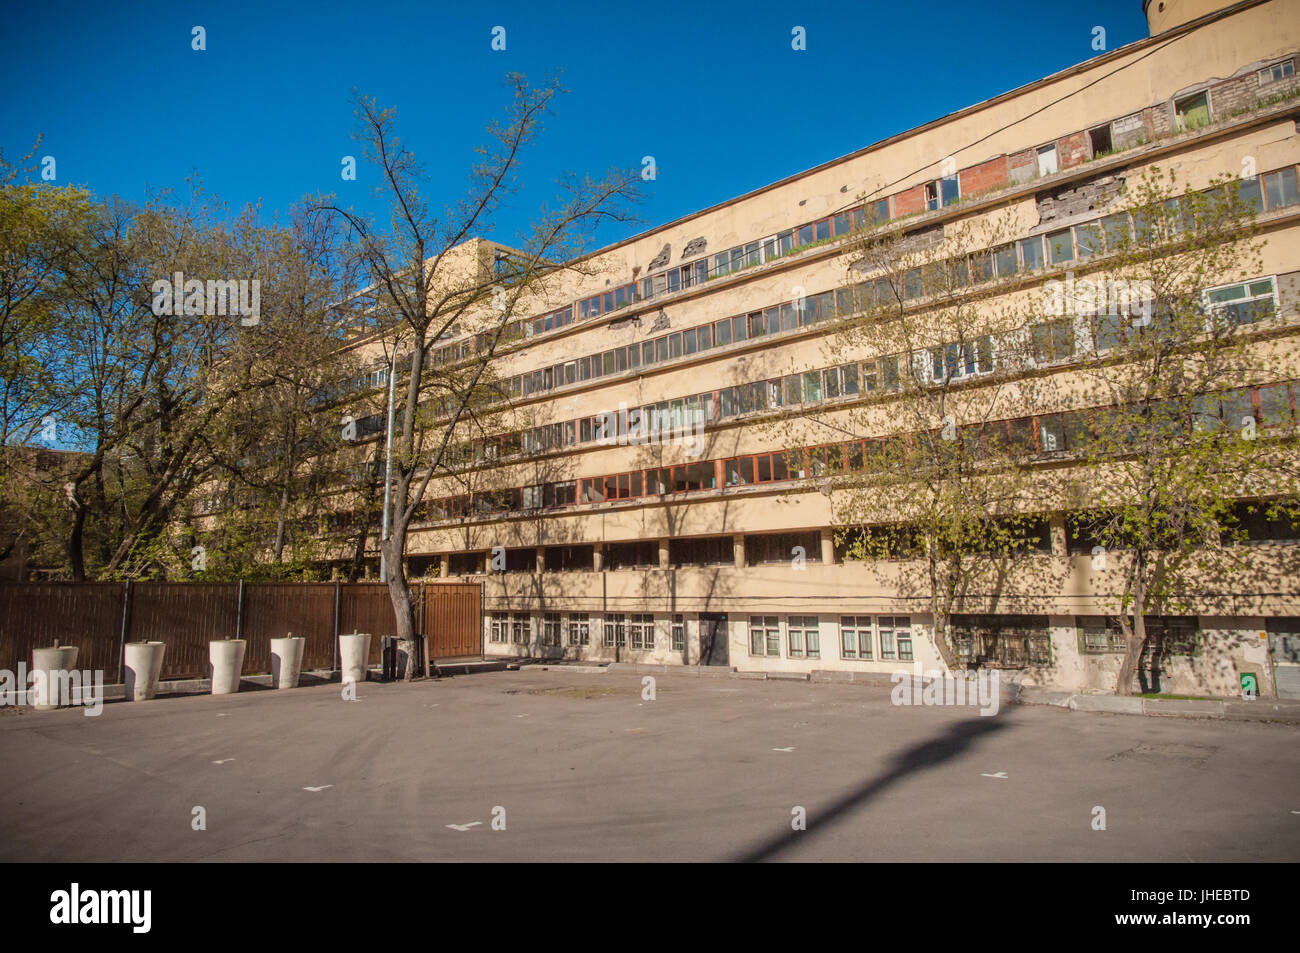 RUSSIA, MOSCA - Maggio 5, 2017. Edificio Narkomfin. Vista esterna. Famosa architettura costruttivista edificio nel distretto centrale di Mosca. Foto Stock